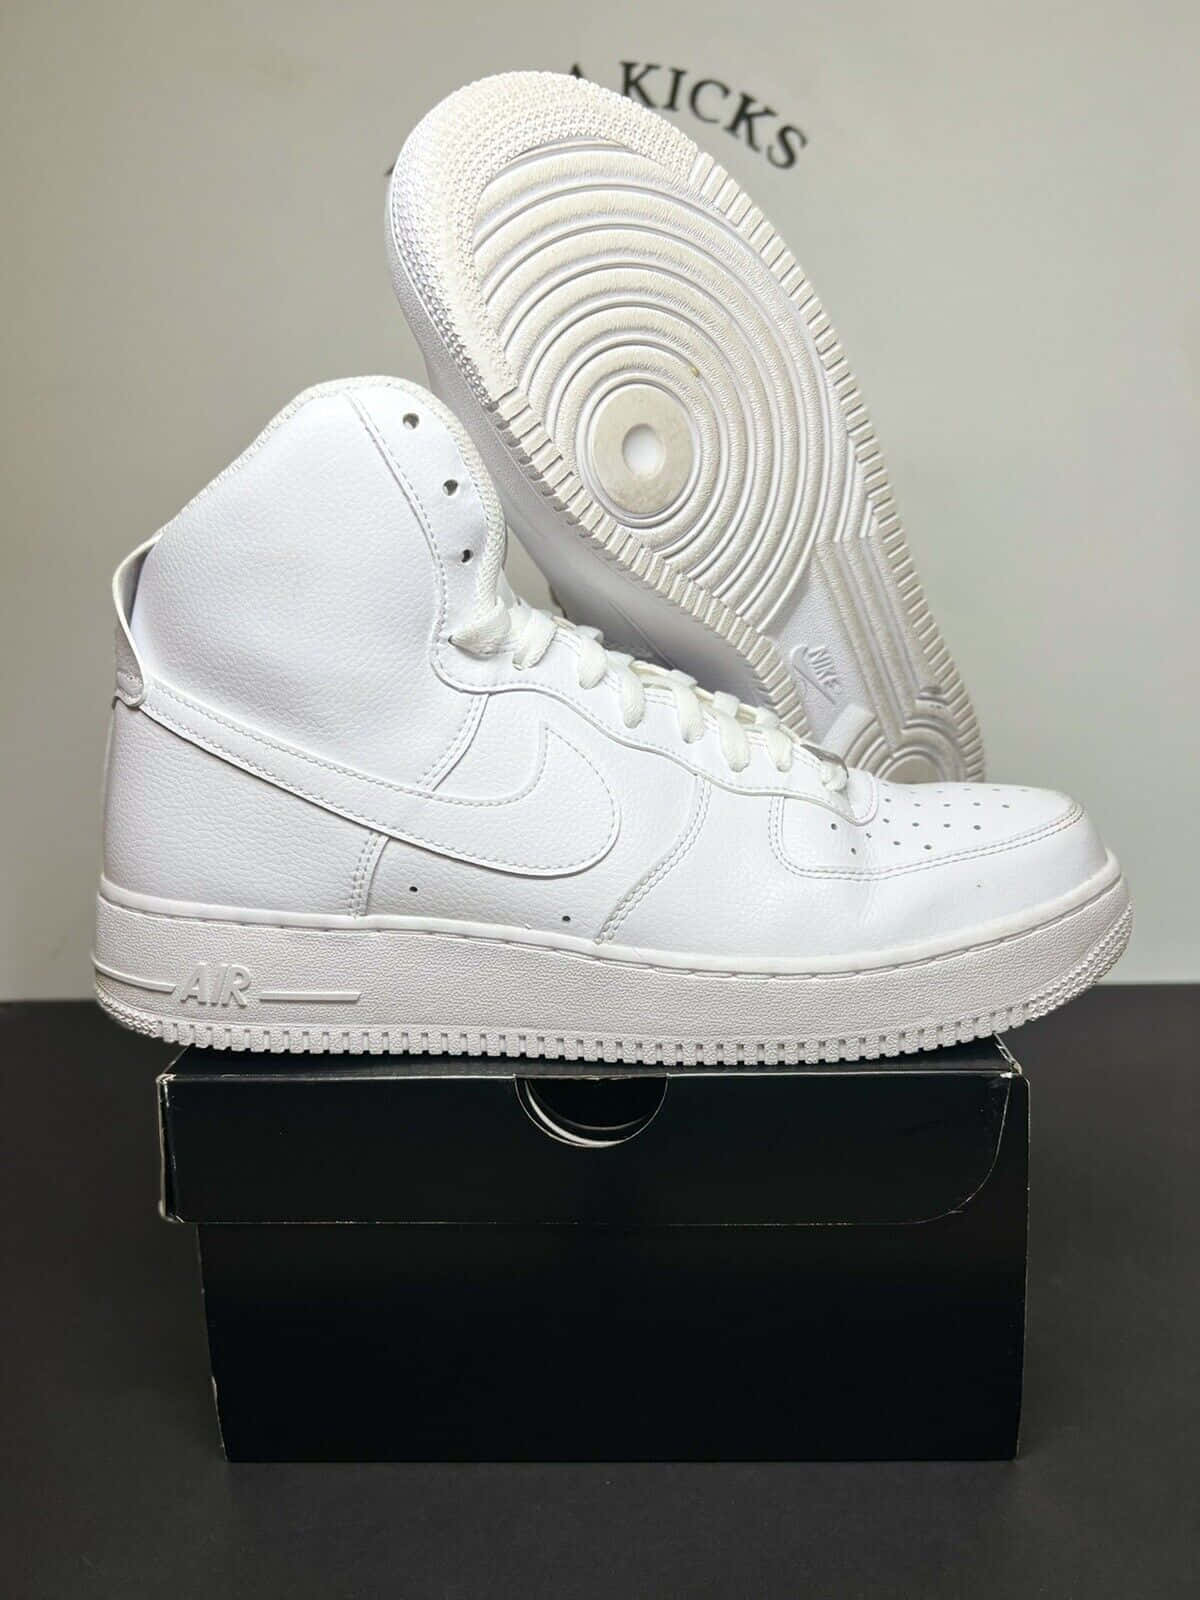 Imagemdo Nike Air Force 1 Em Branco, Com Uma Forma Elevada.